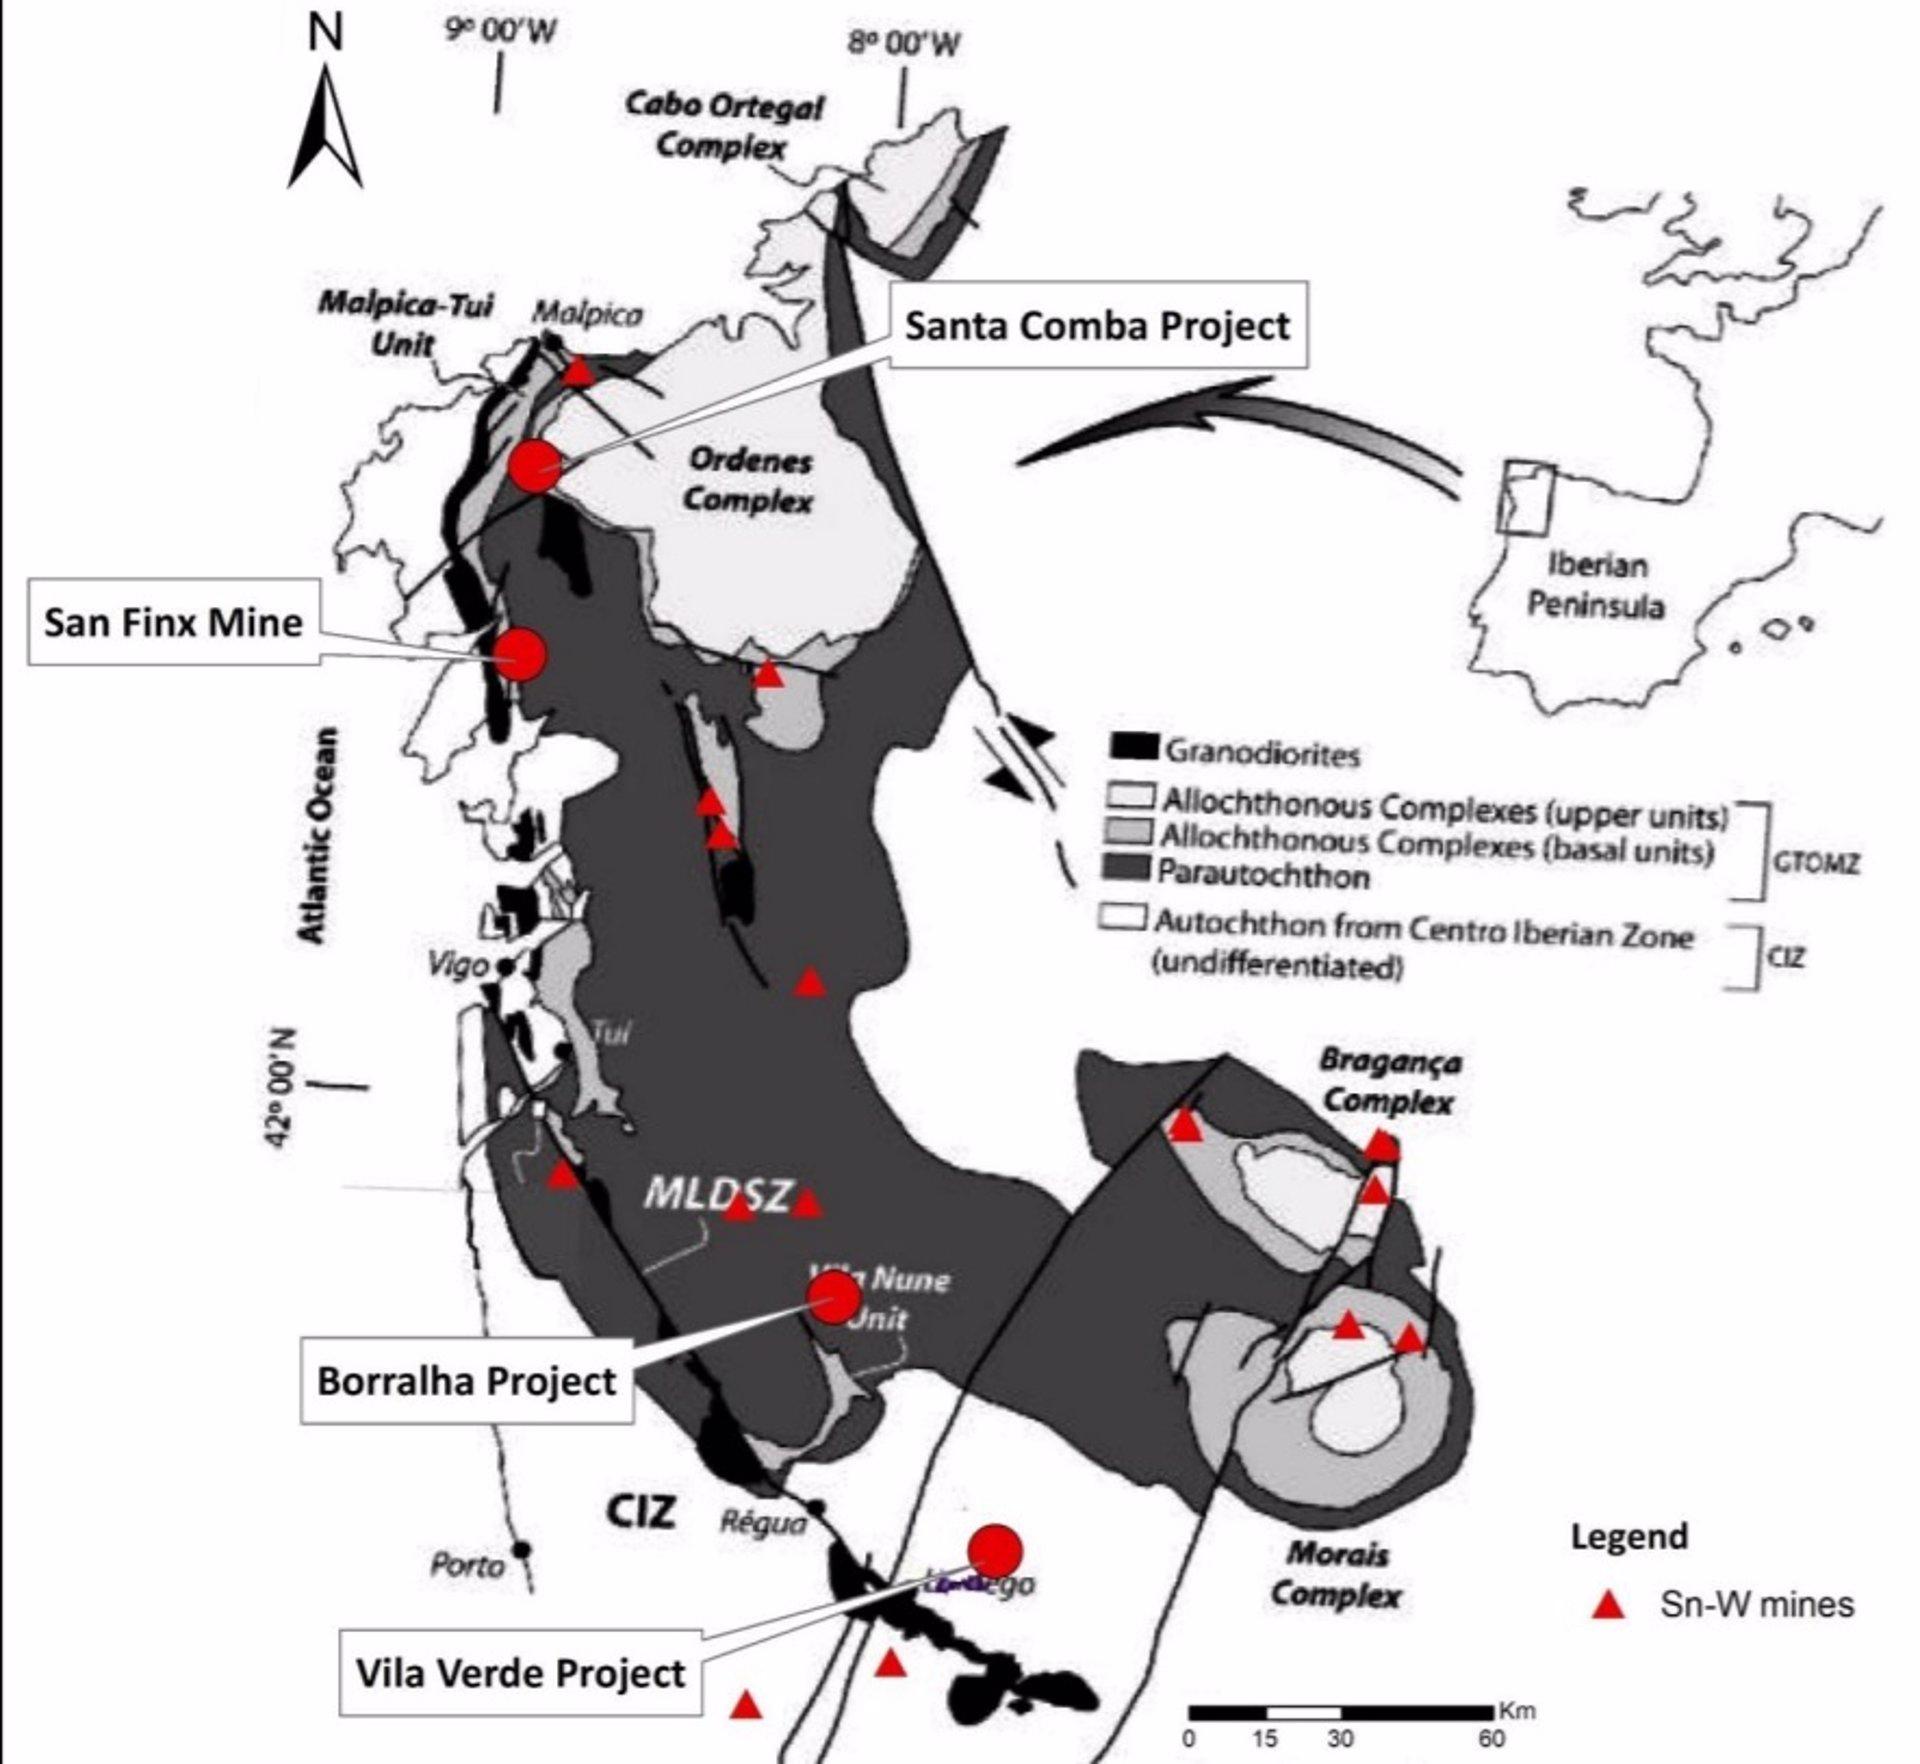 Mapa de inversiones de la compañía australiana Rafaella Resources tras comprar a Sacyr la mina de San Finx, en Lousame (A Coruña) (Rafaella Resources).